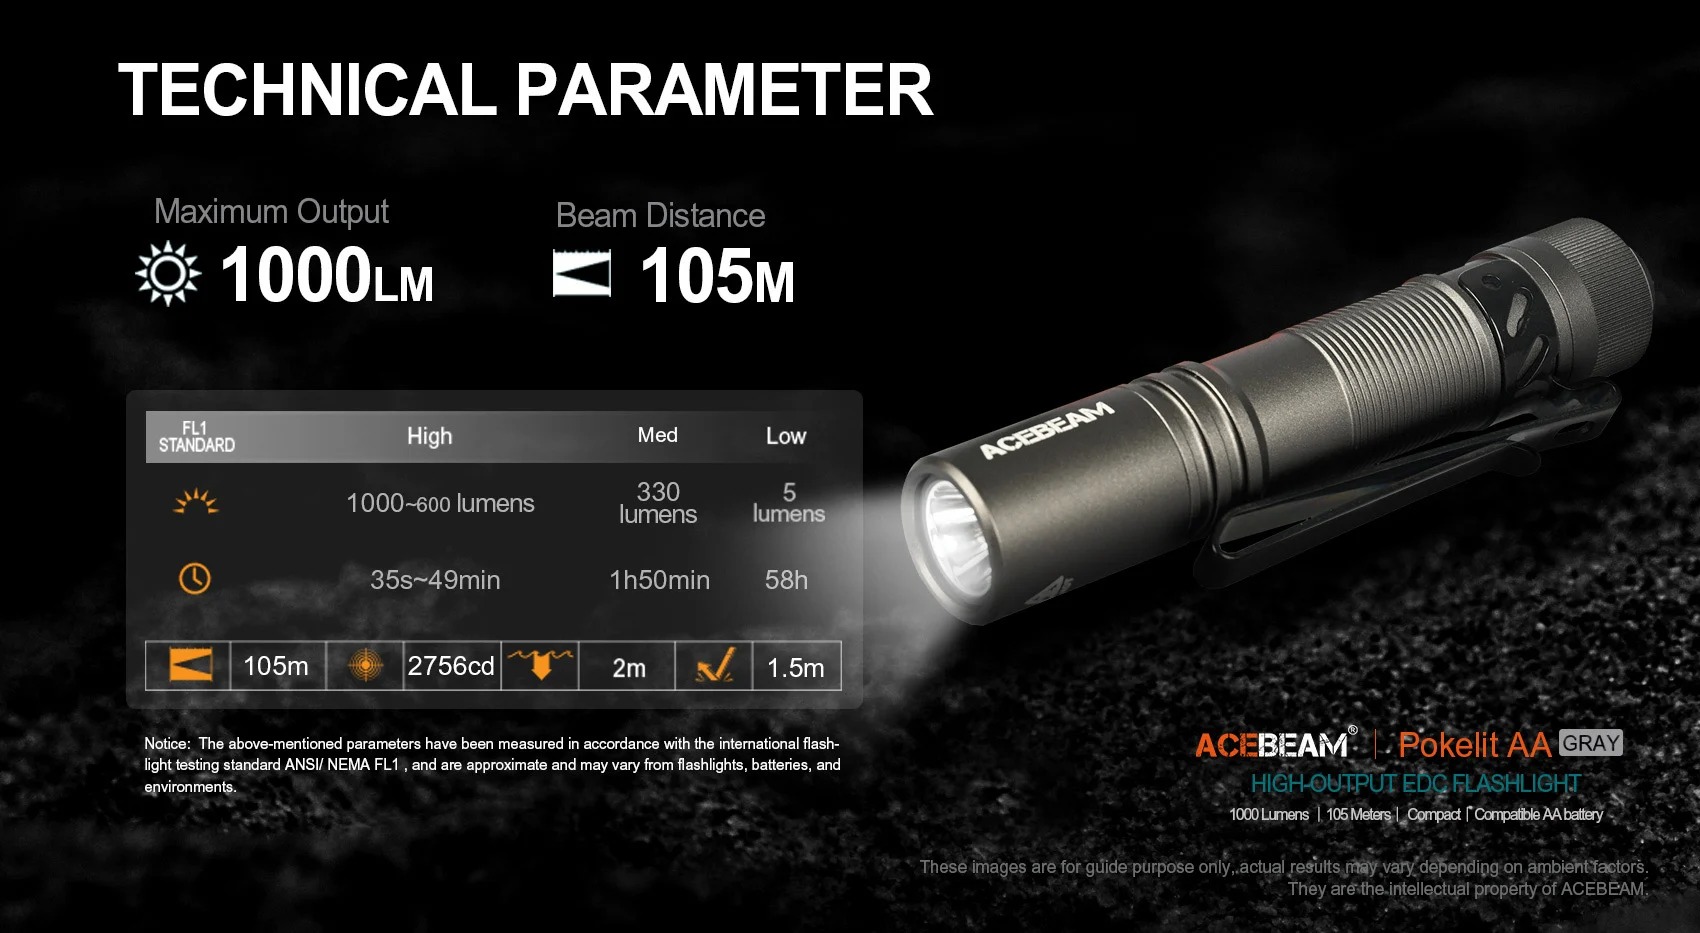 ACEBEAM Pokelit AA 1000流明 105米 便攜強光手電筒 Type-C充電 AA電池可用